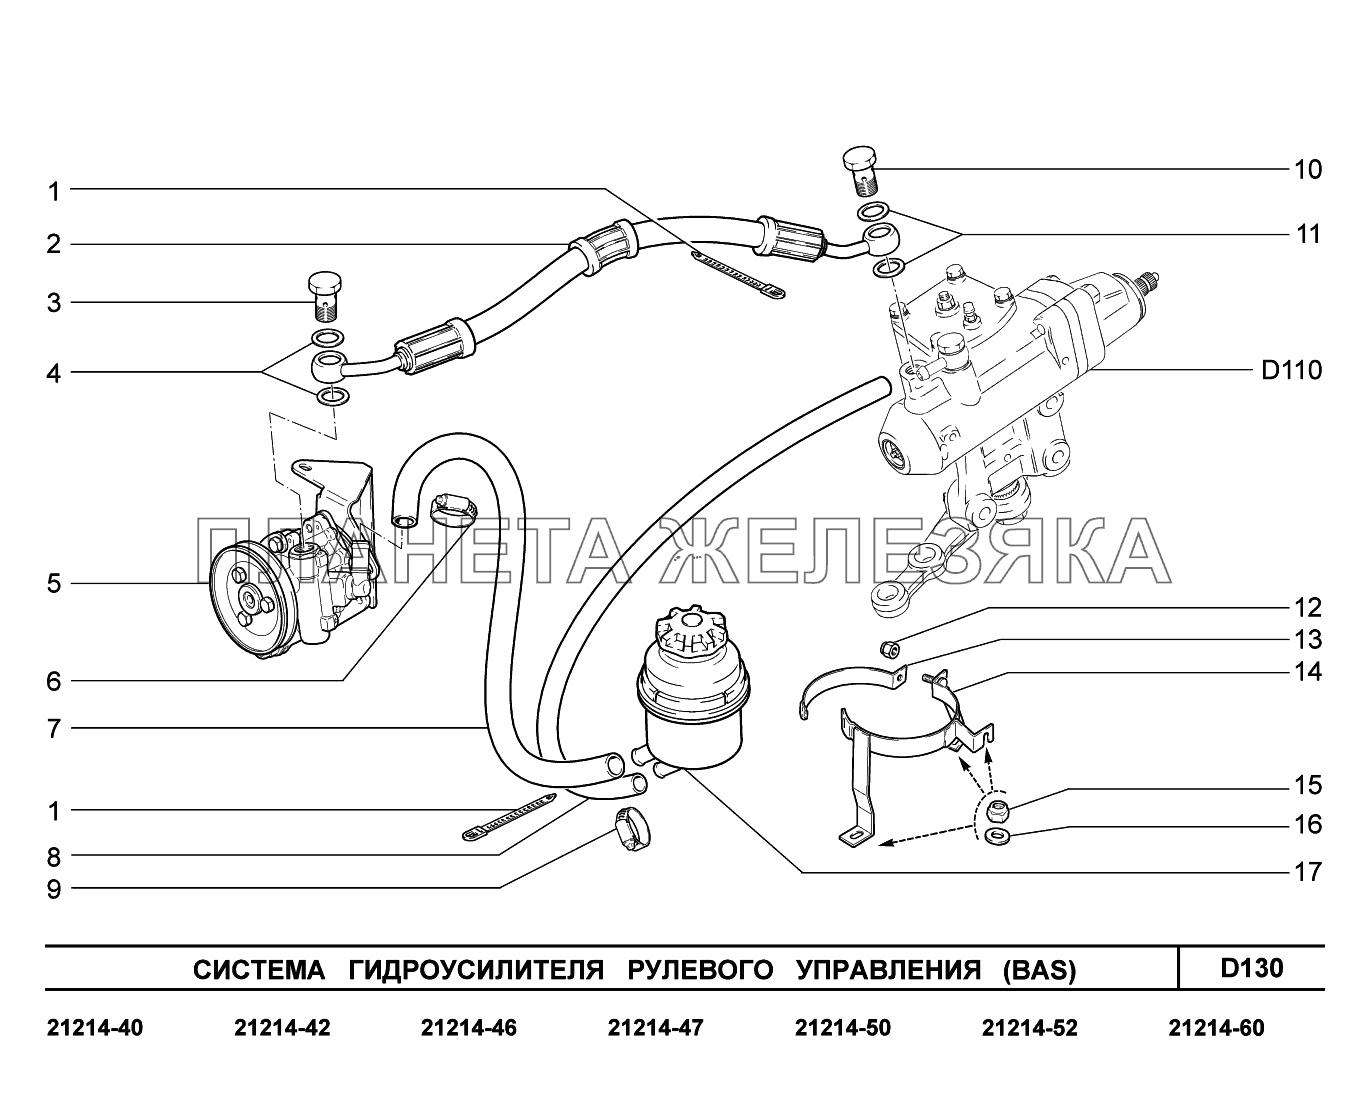 D130. Система гидроусилителя рулевого управления Lada 4x4 Urban